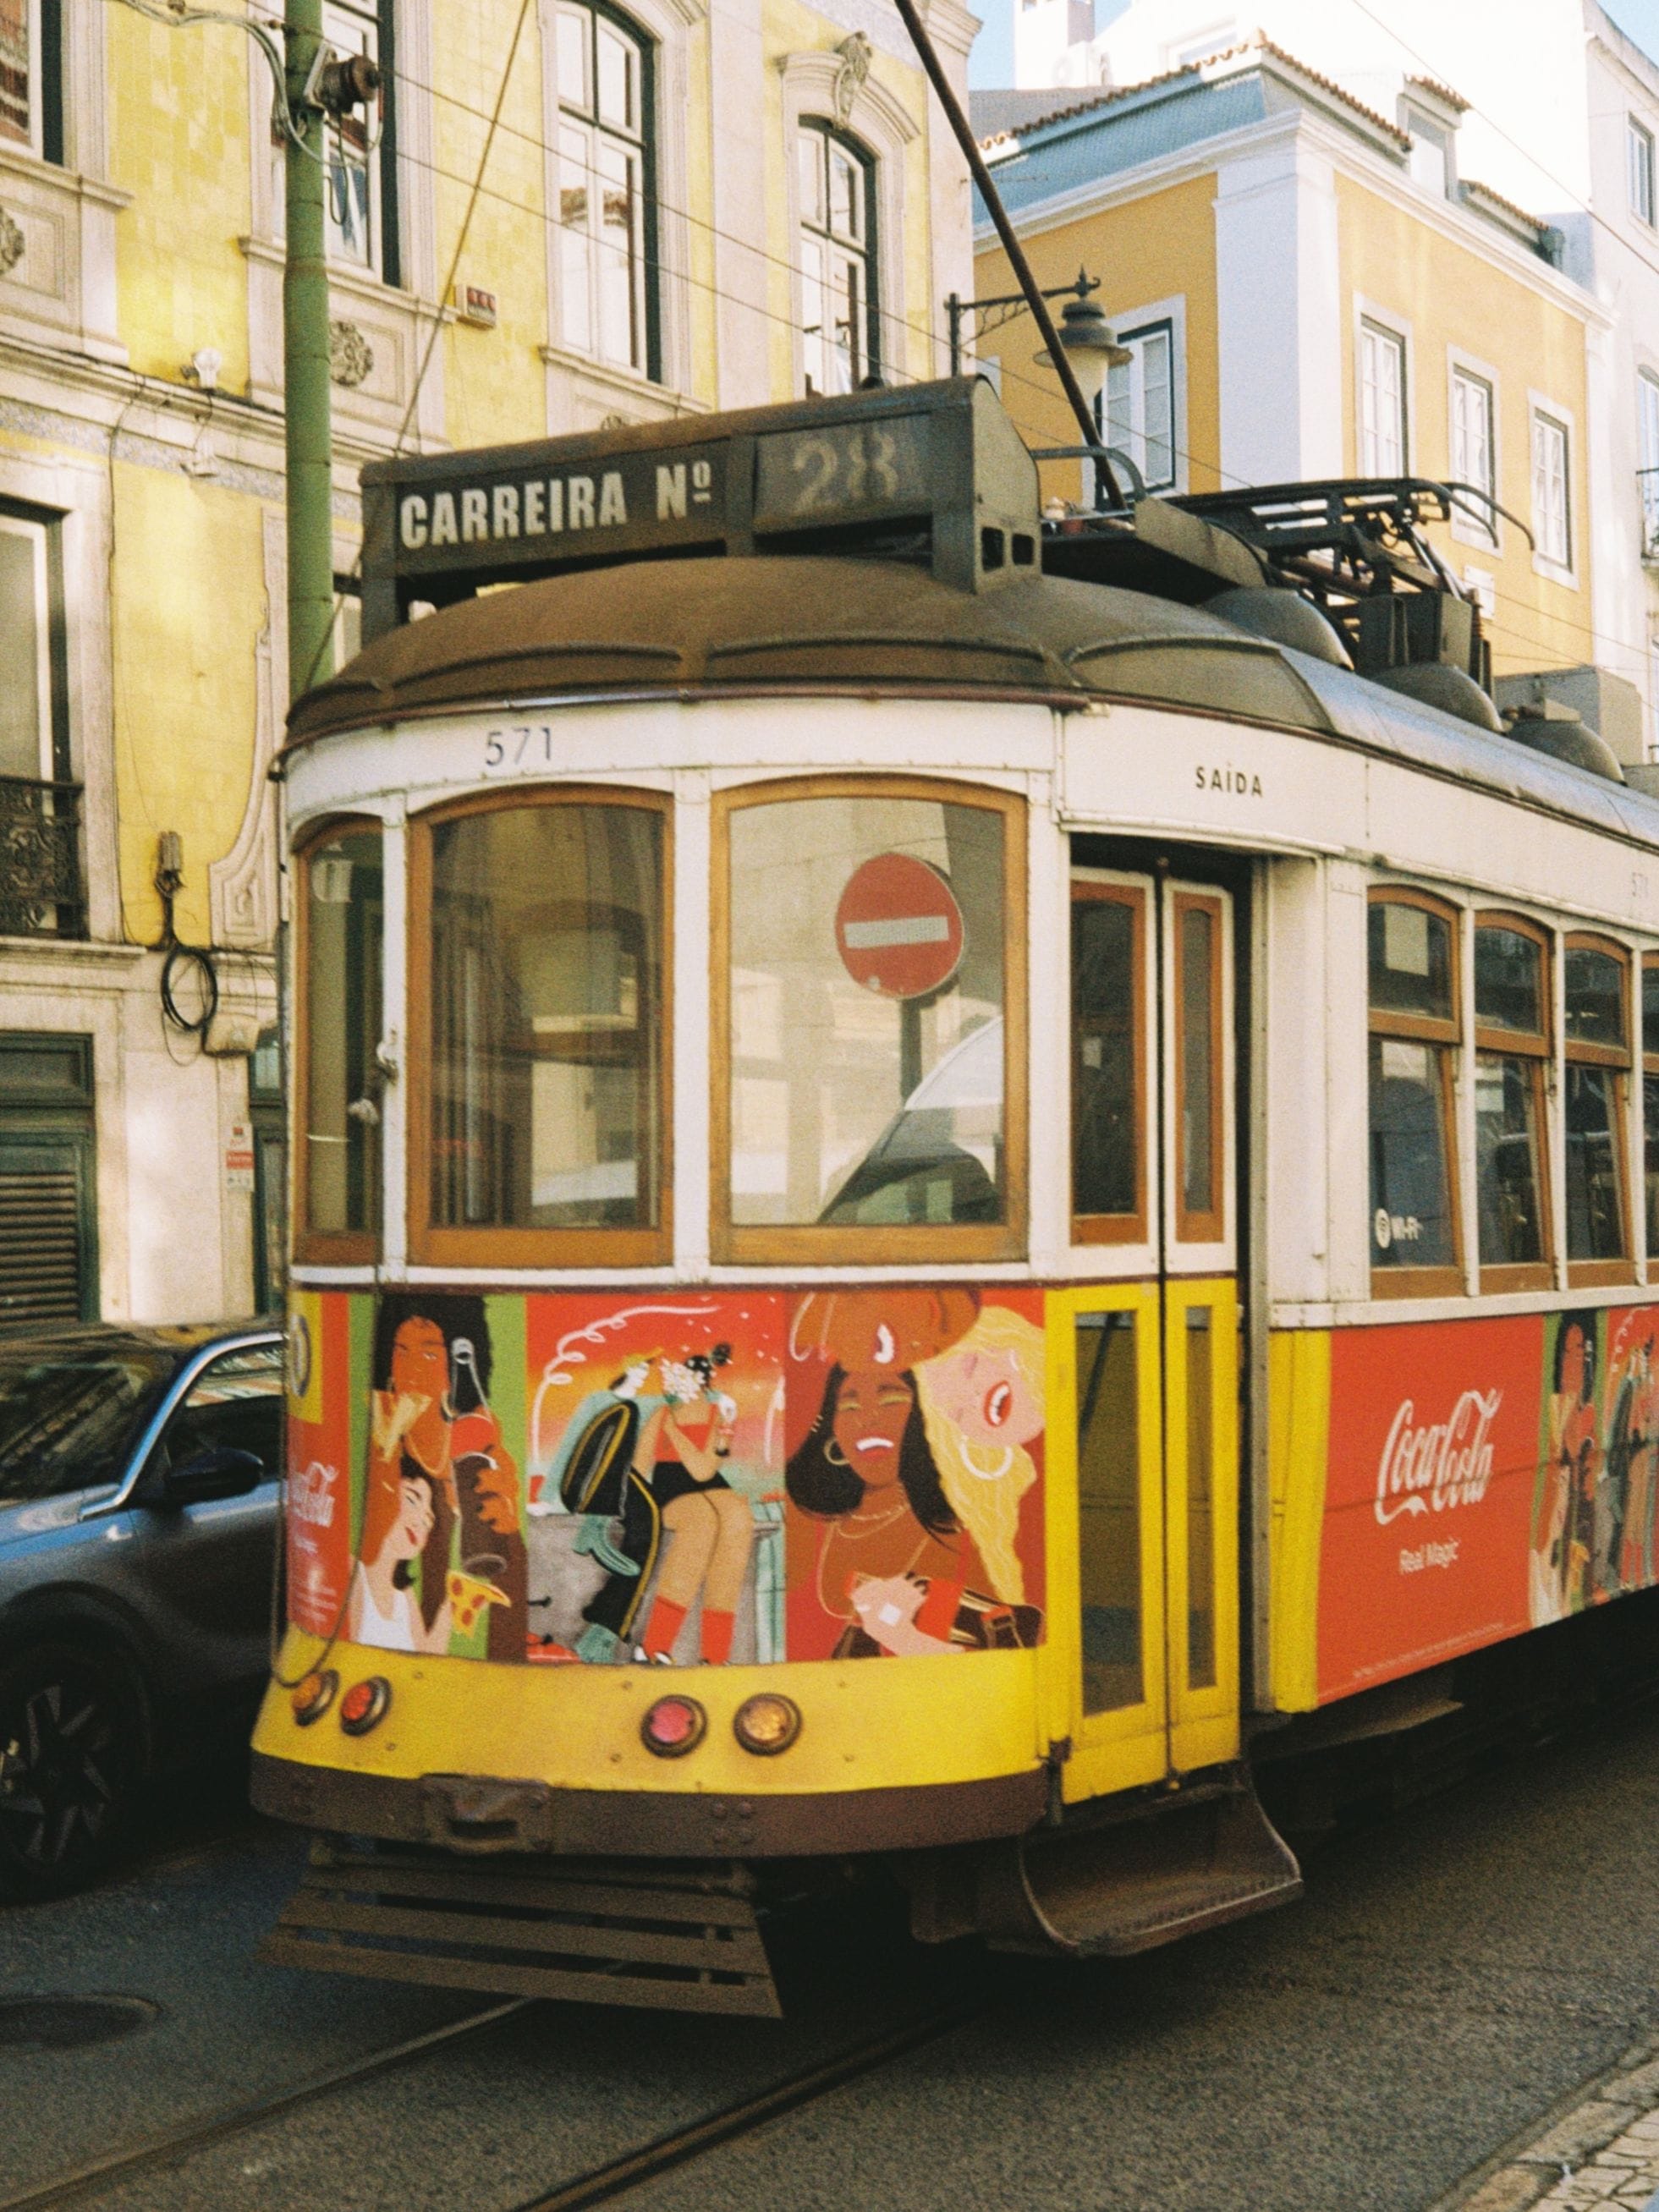 Lisboa aka Lisbon - The vibrant capital city of Portugal